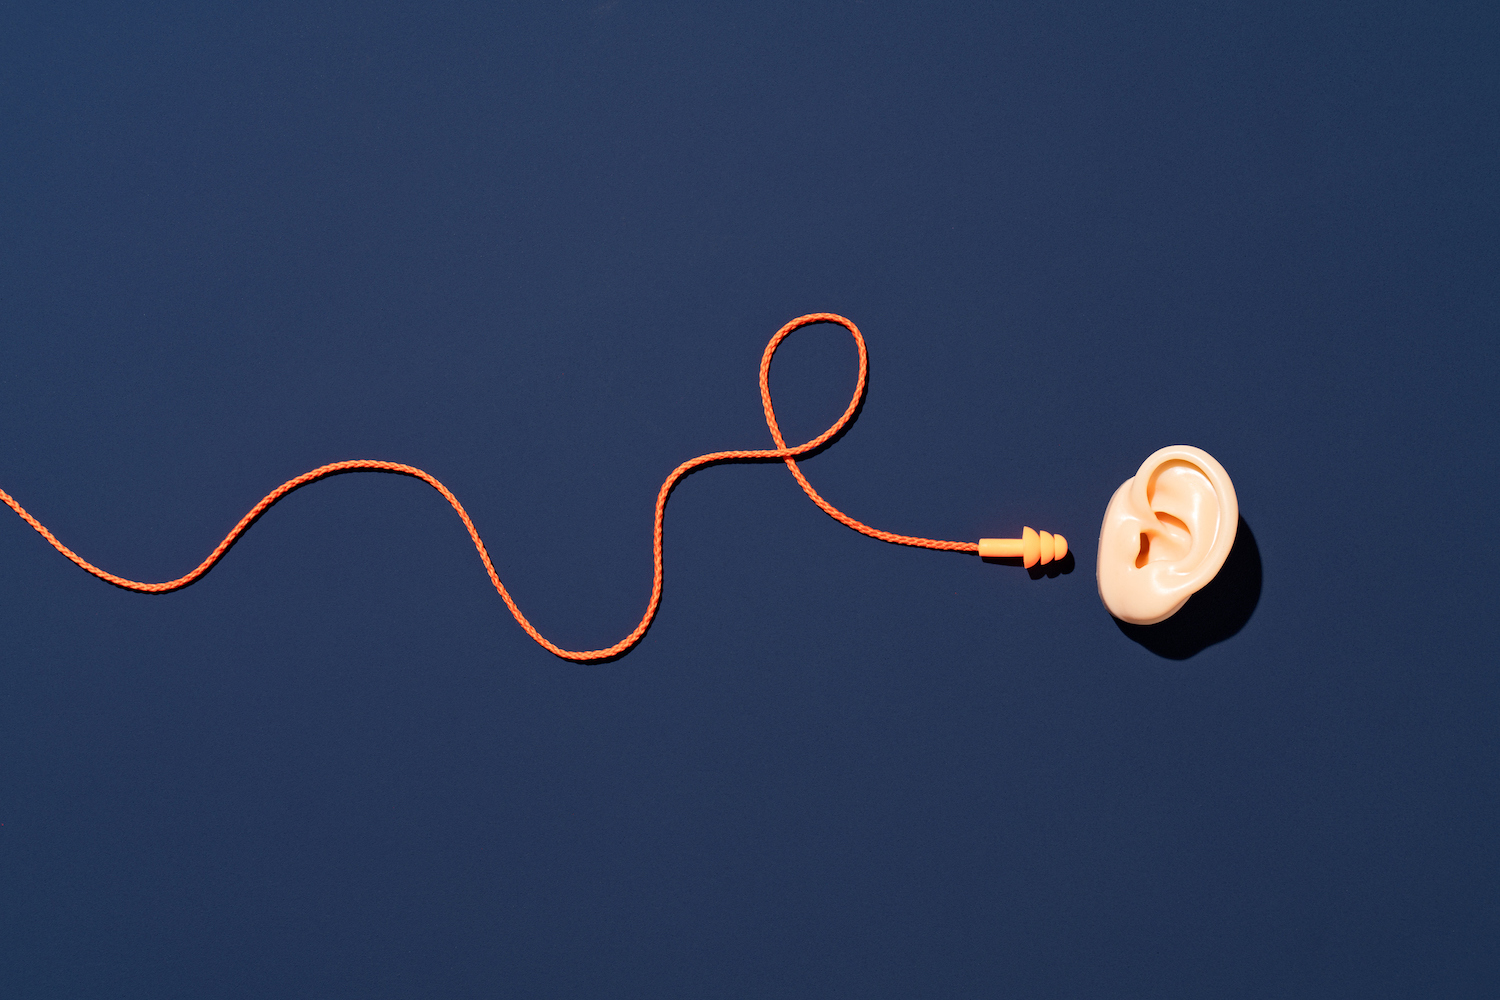 Tampões de ouvido laranja com corda curva alcance a orelha no fundo azul diretamente acima da vista.  4 dicas para as equipes de RevOps filtrarem o ruído e focarem no quadro geral